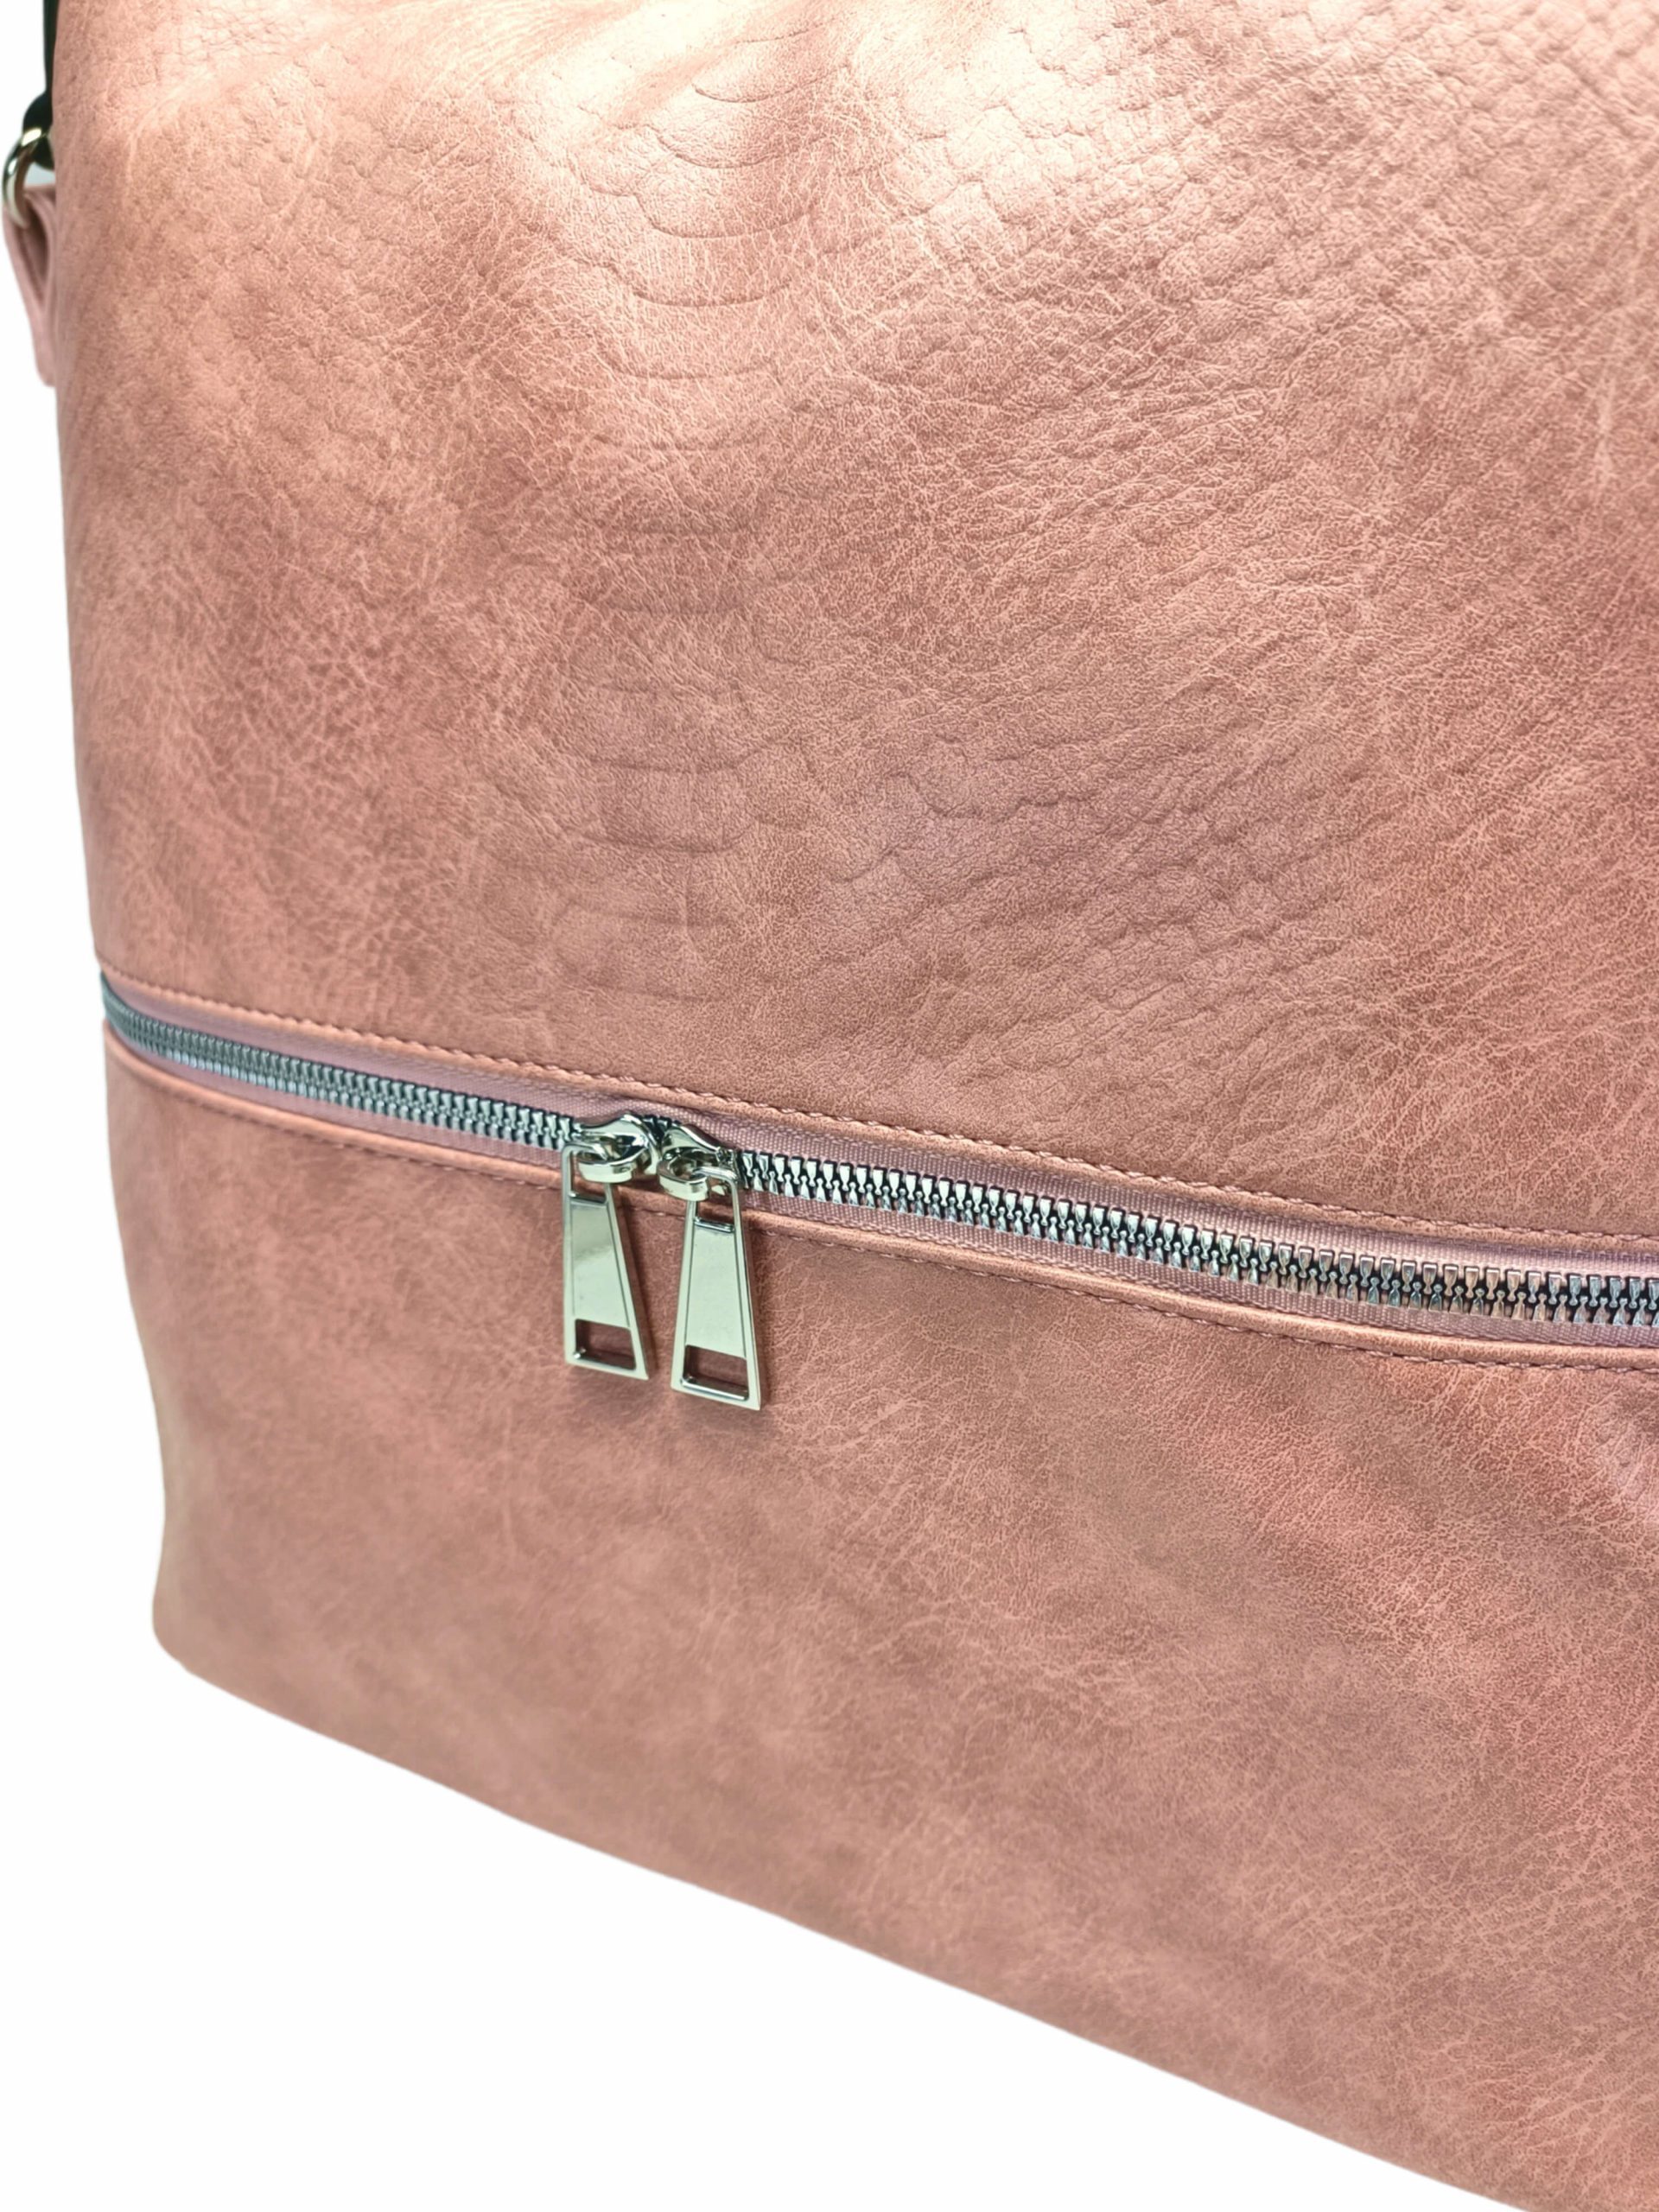 Moderní starorůžový kabelko-batoh z eko kůže, Tapple, H190010, detail kabelko-batohu 2v1